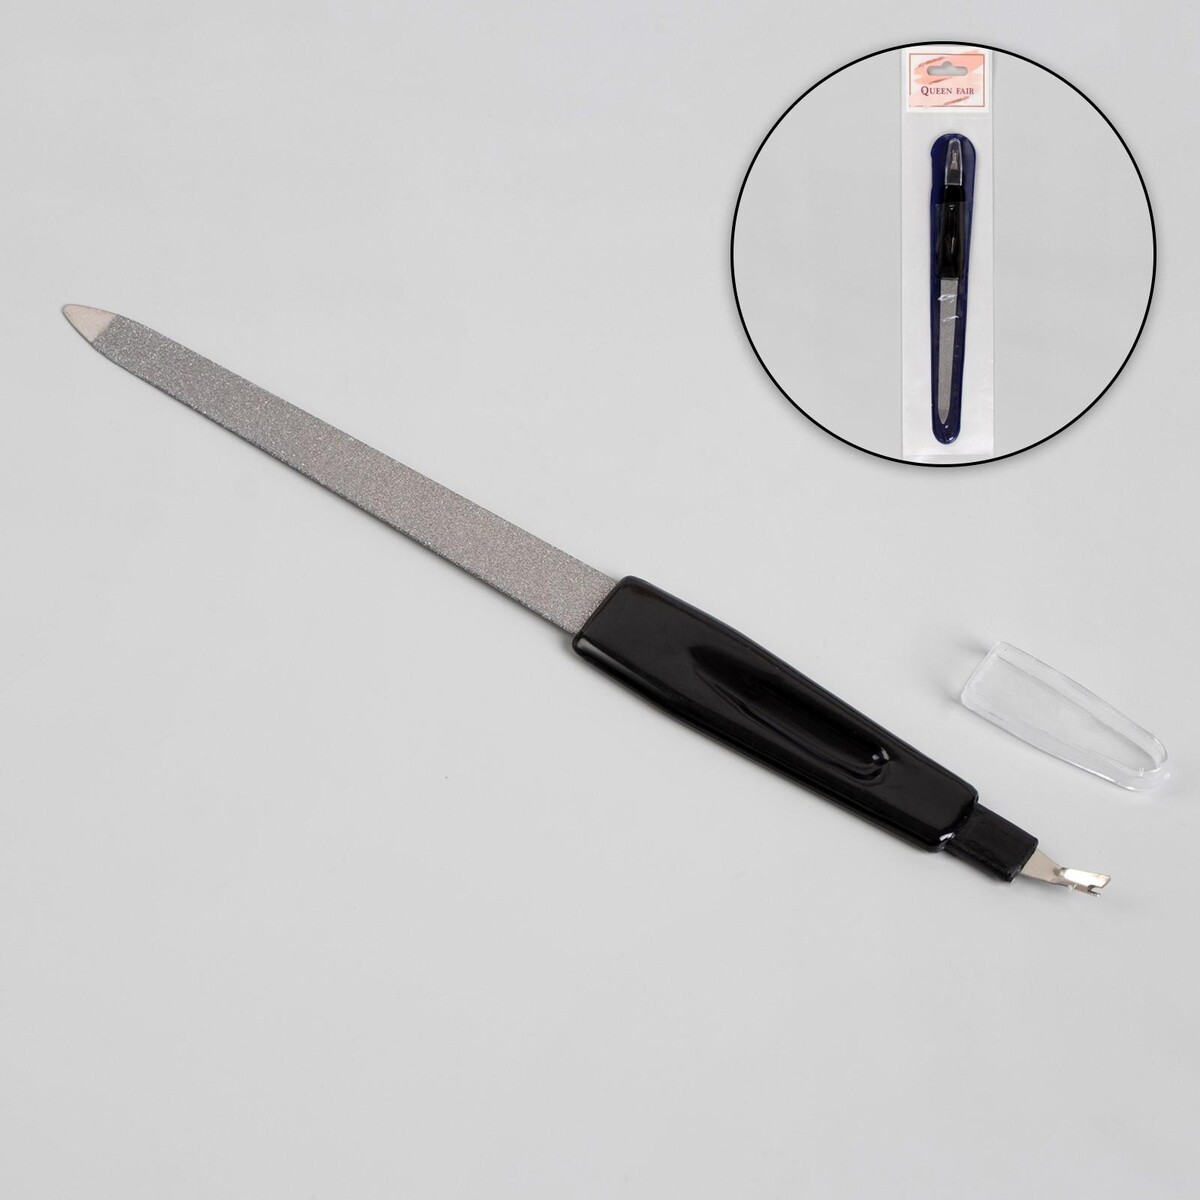 Пилка-триммер металлическая для ногтей, 17 см, с защитным колпачком, в чехле, цвет черный триммер panasonic er1420s520